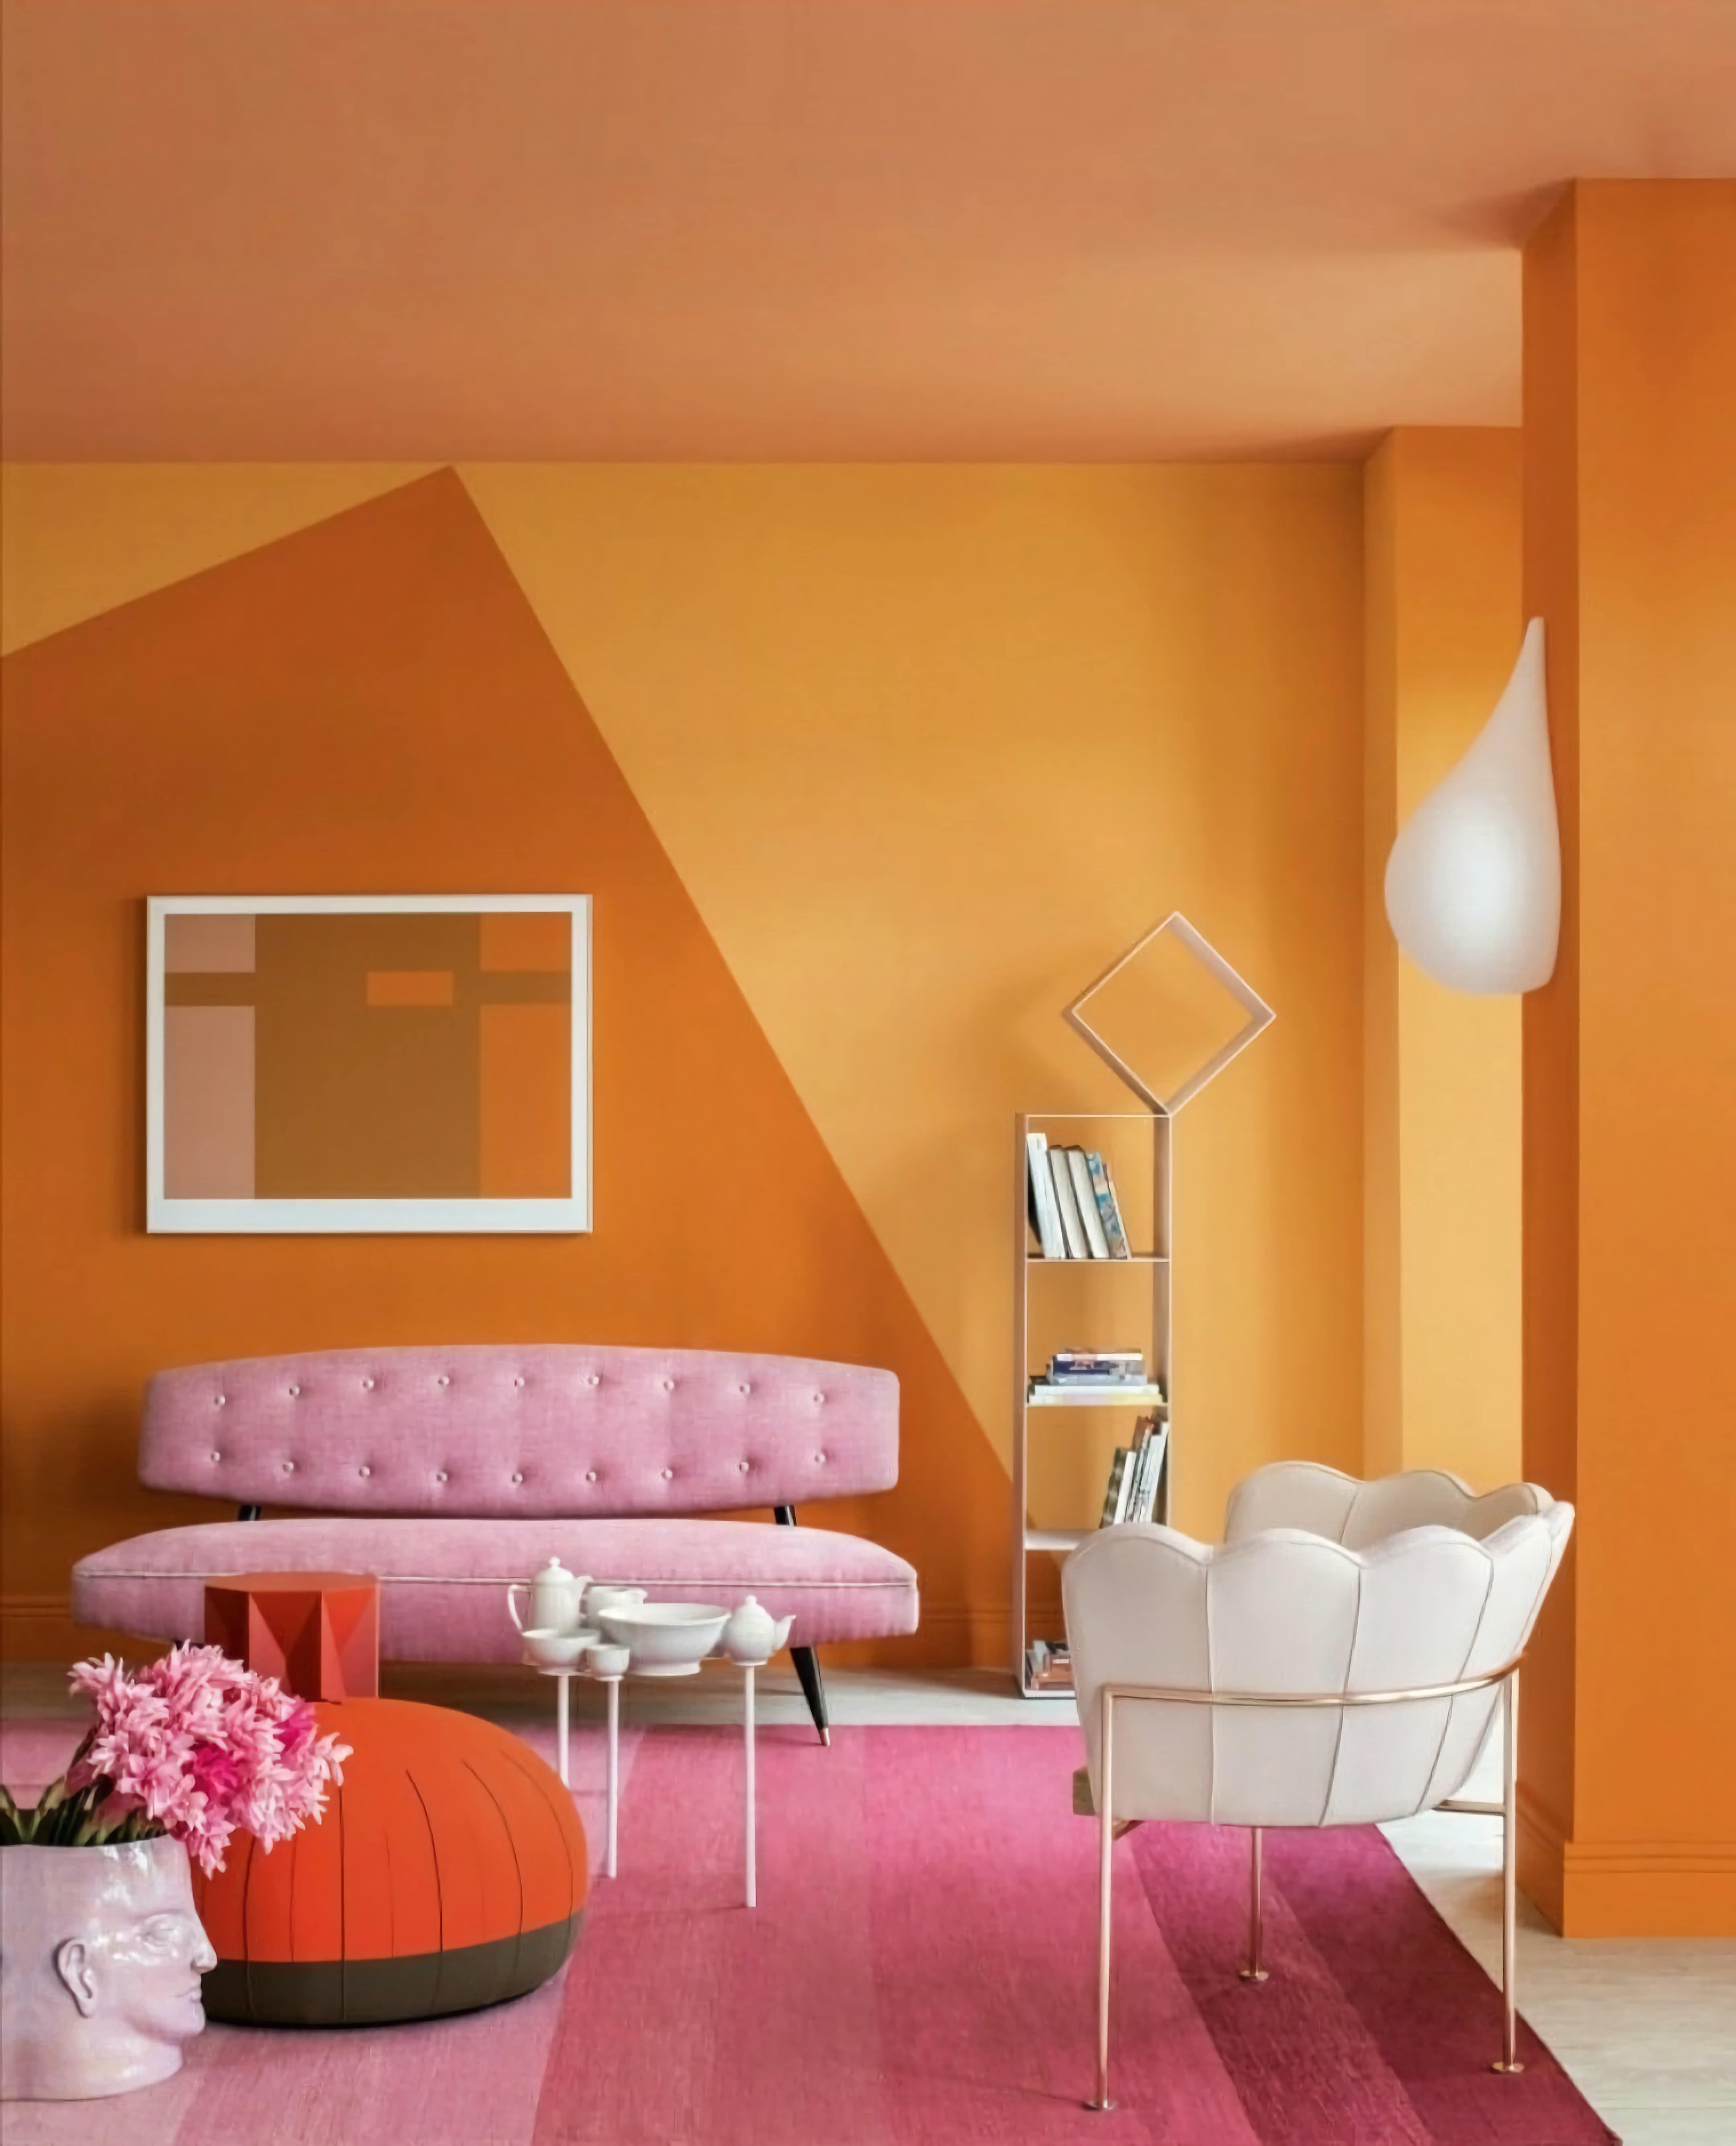 самые популярные цвета для покраски стен в интерьере